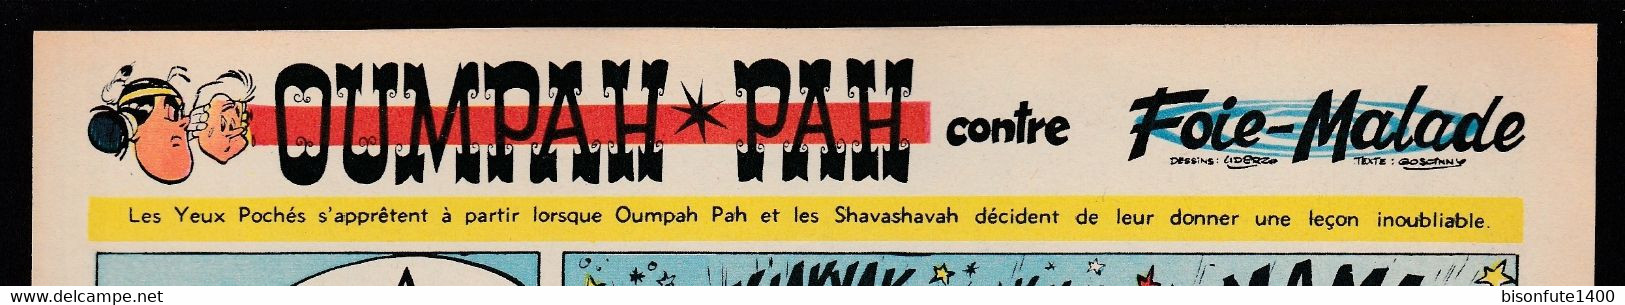 Bandeau Titre De Oumpah-Pah "Contre Foie-Malade" De 1962 Et Inédit Dans Les Bandes Dessinées En Album. - Oumpah-pah